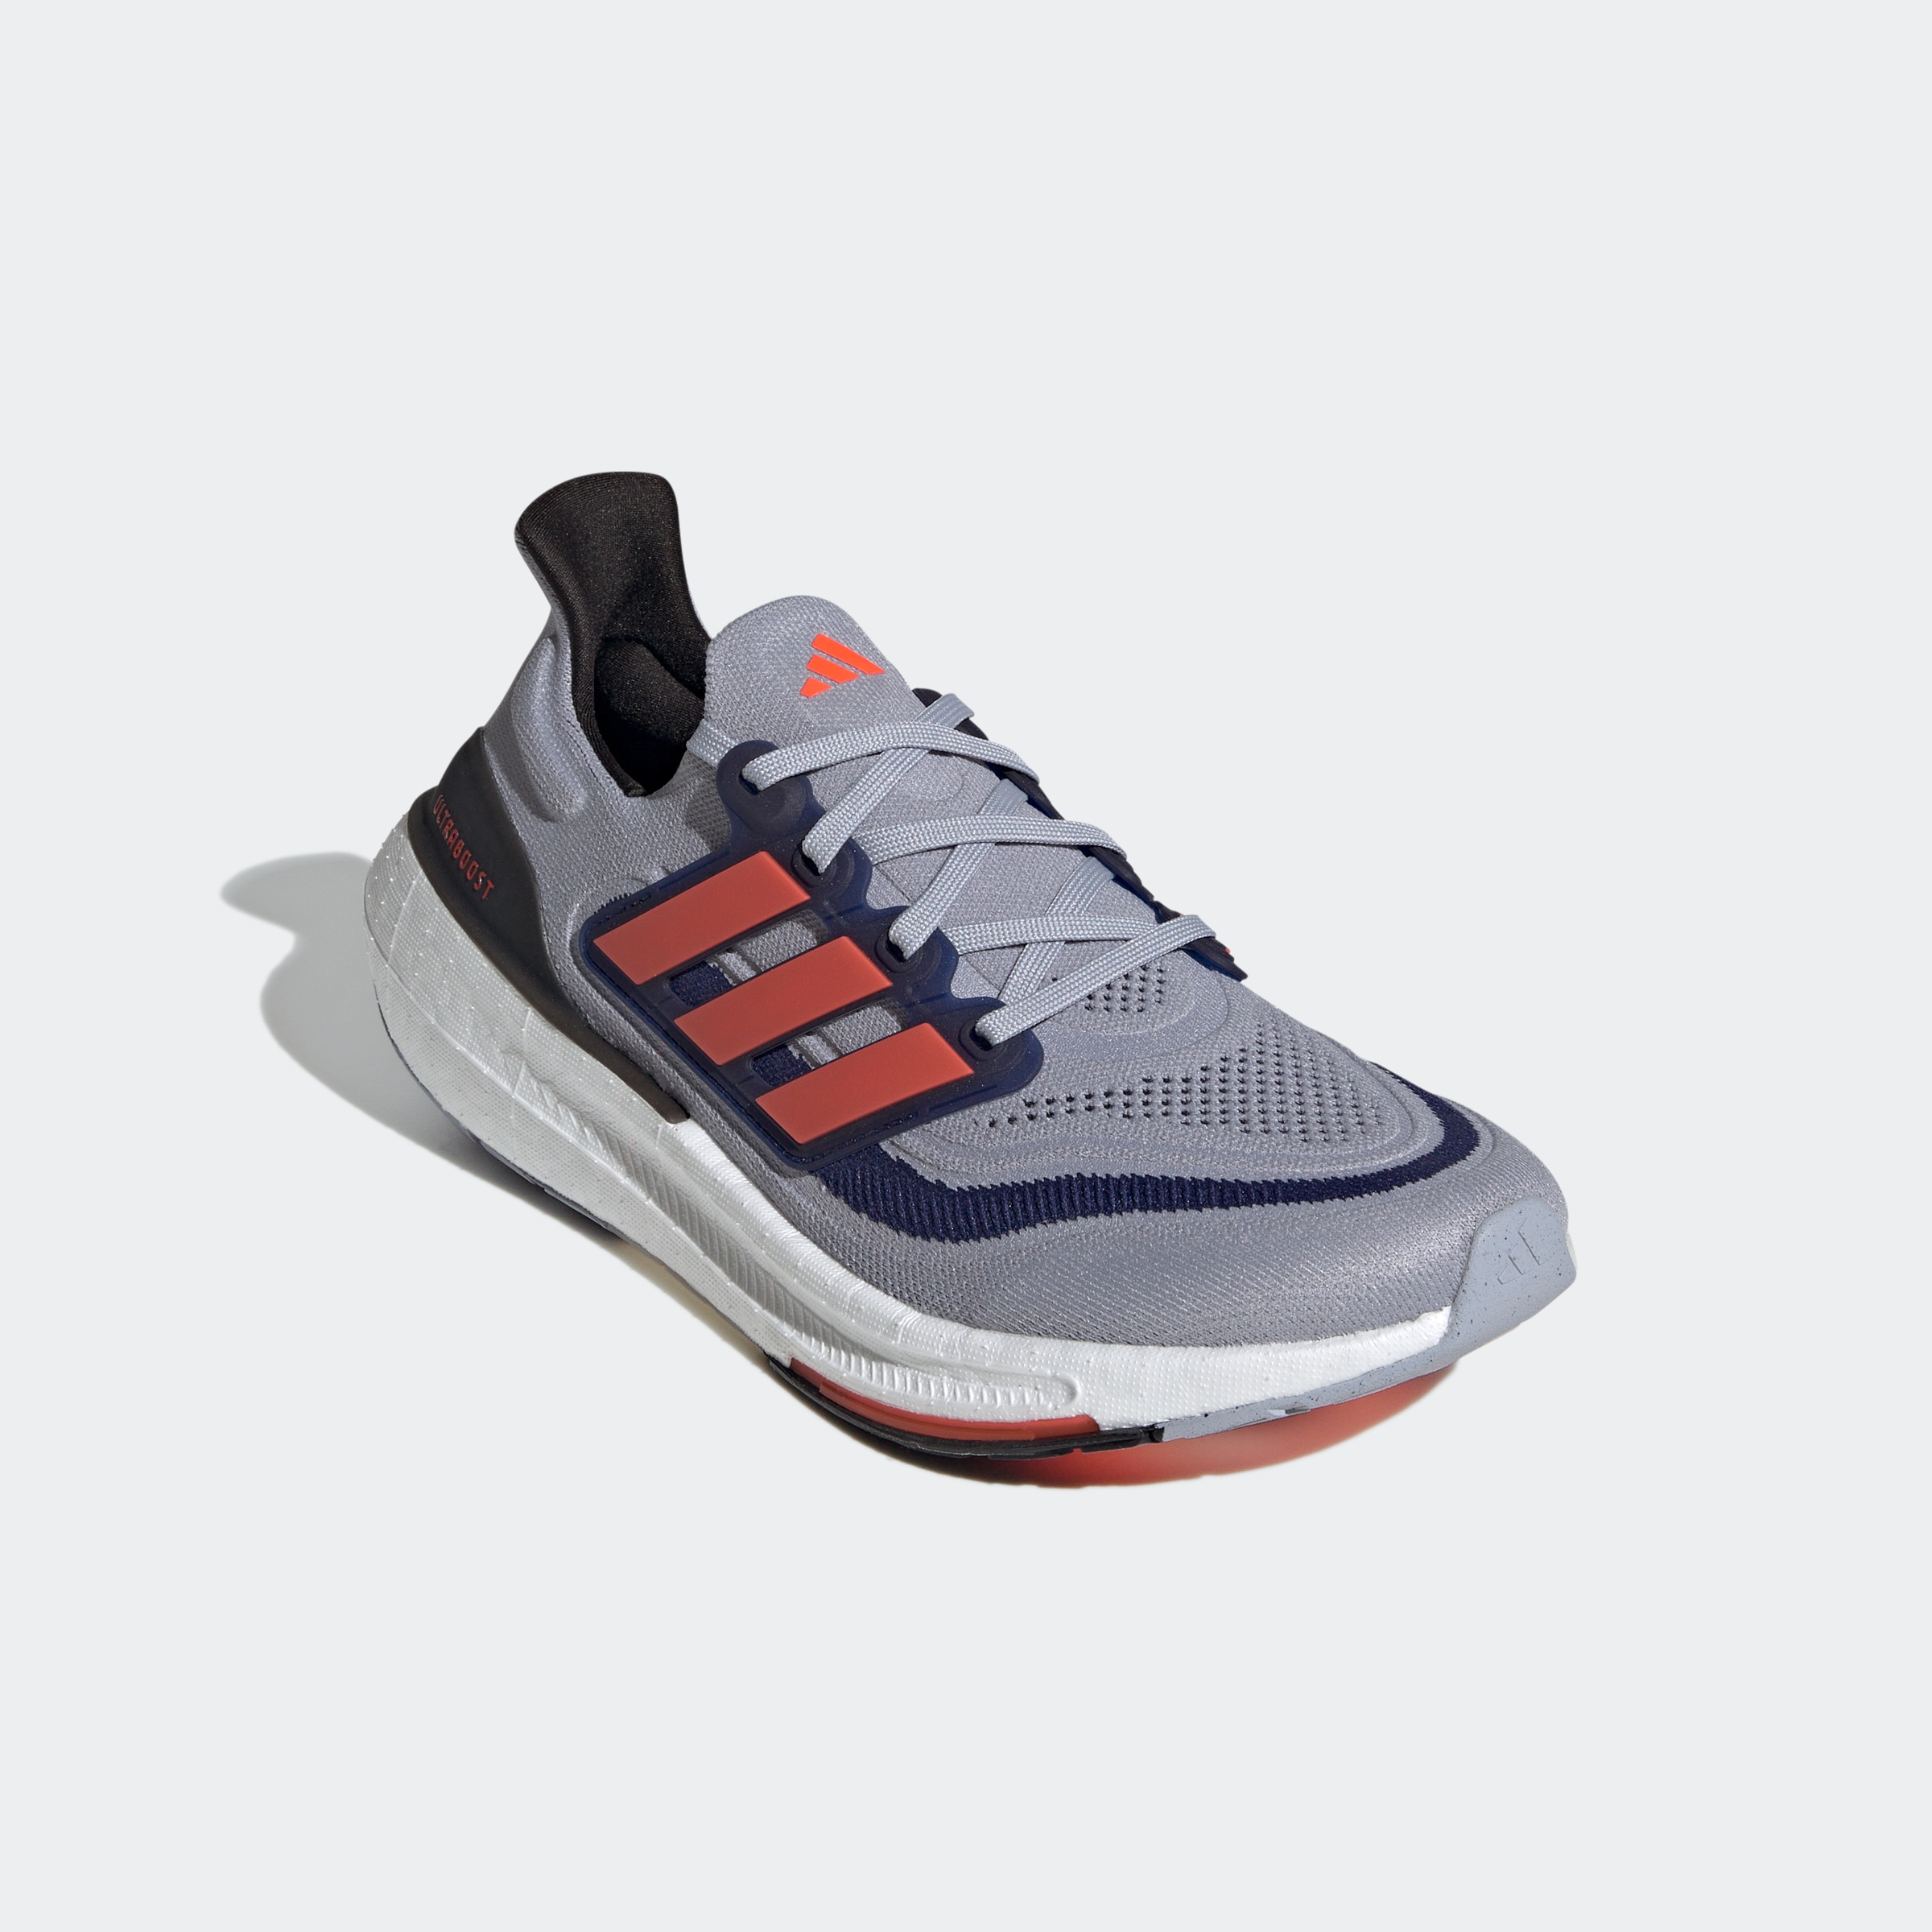 adidas - Ultraboost Light - Runningschuhe Gr 9 grau/blau